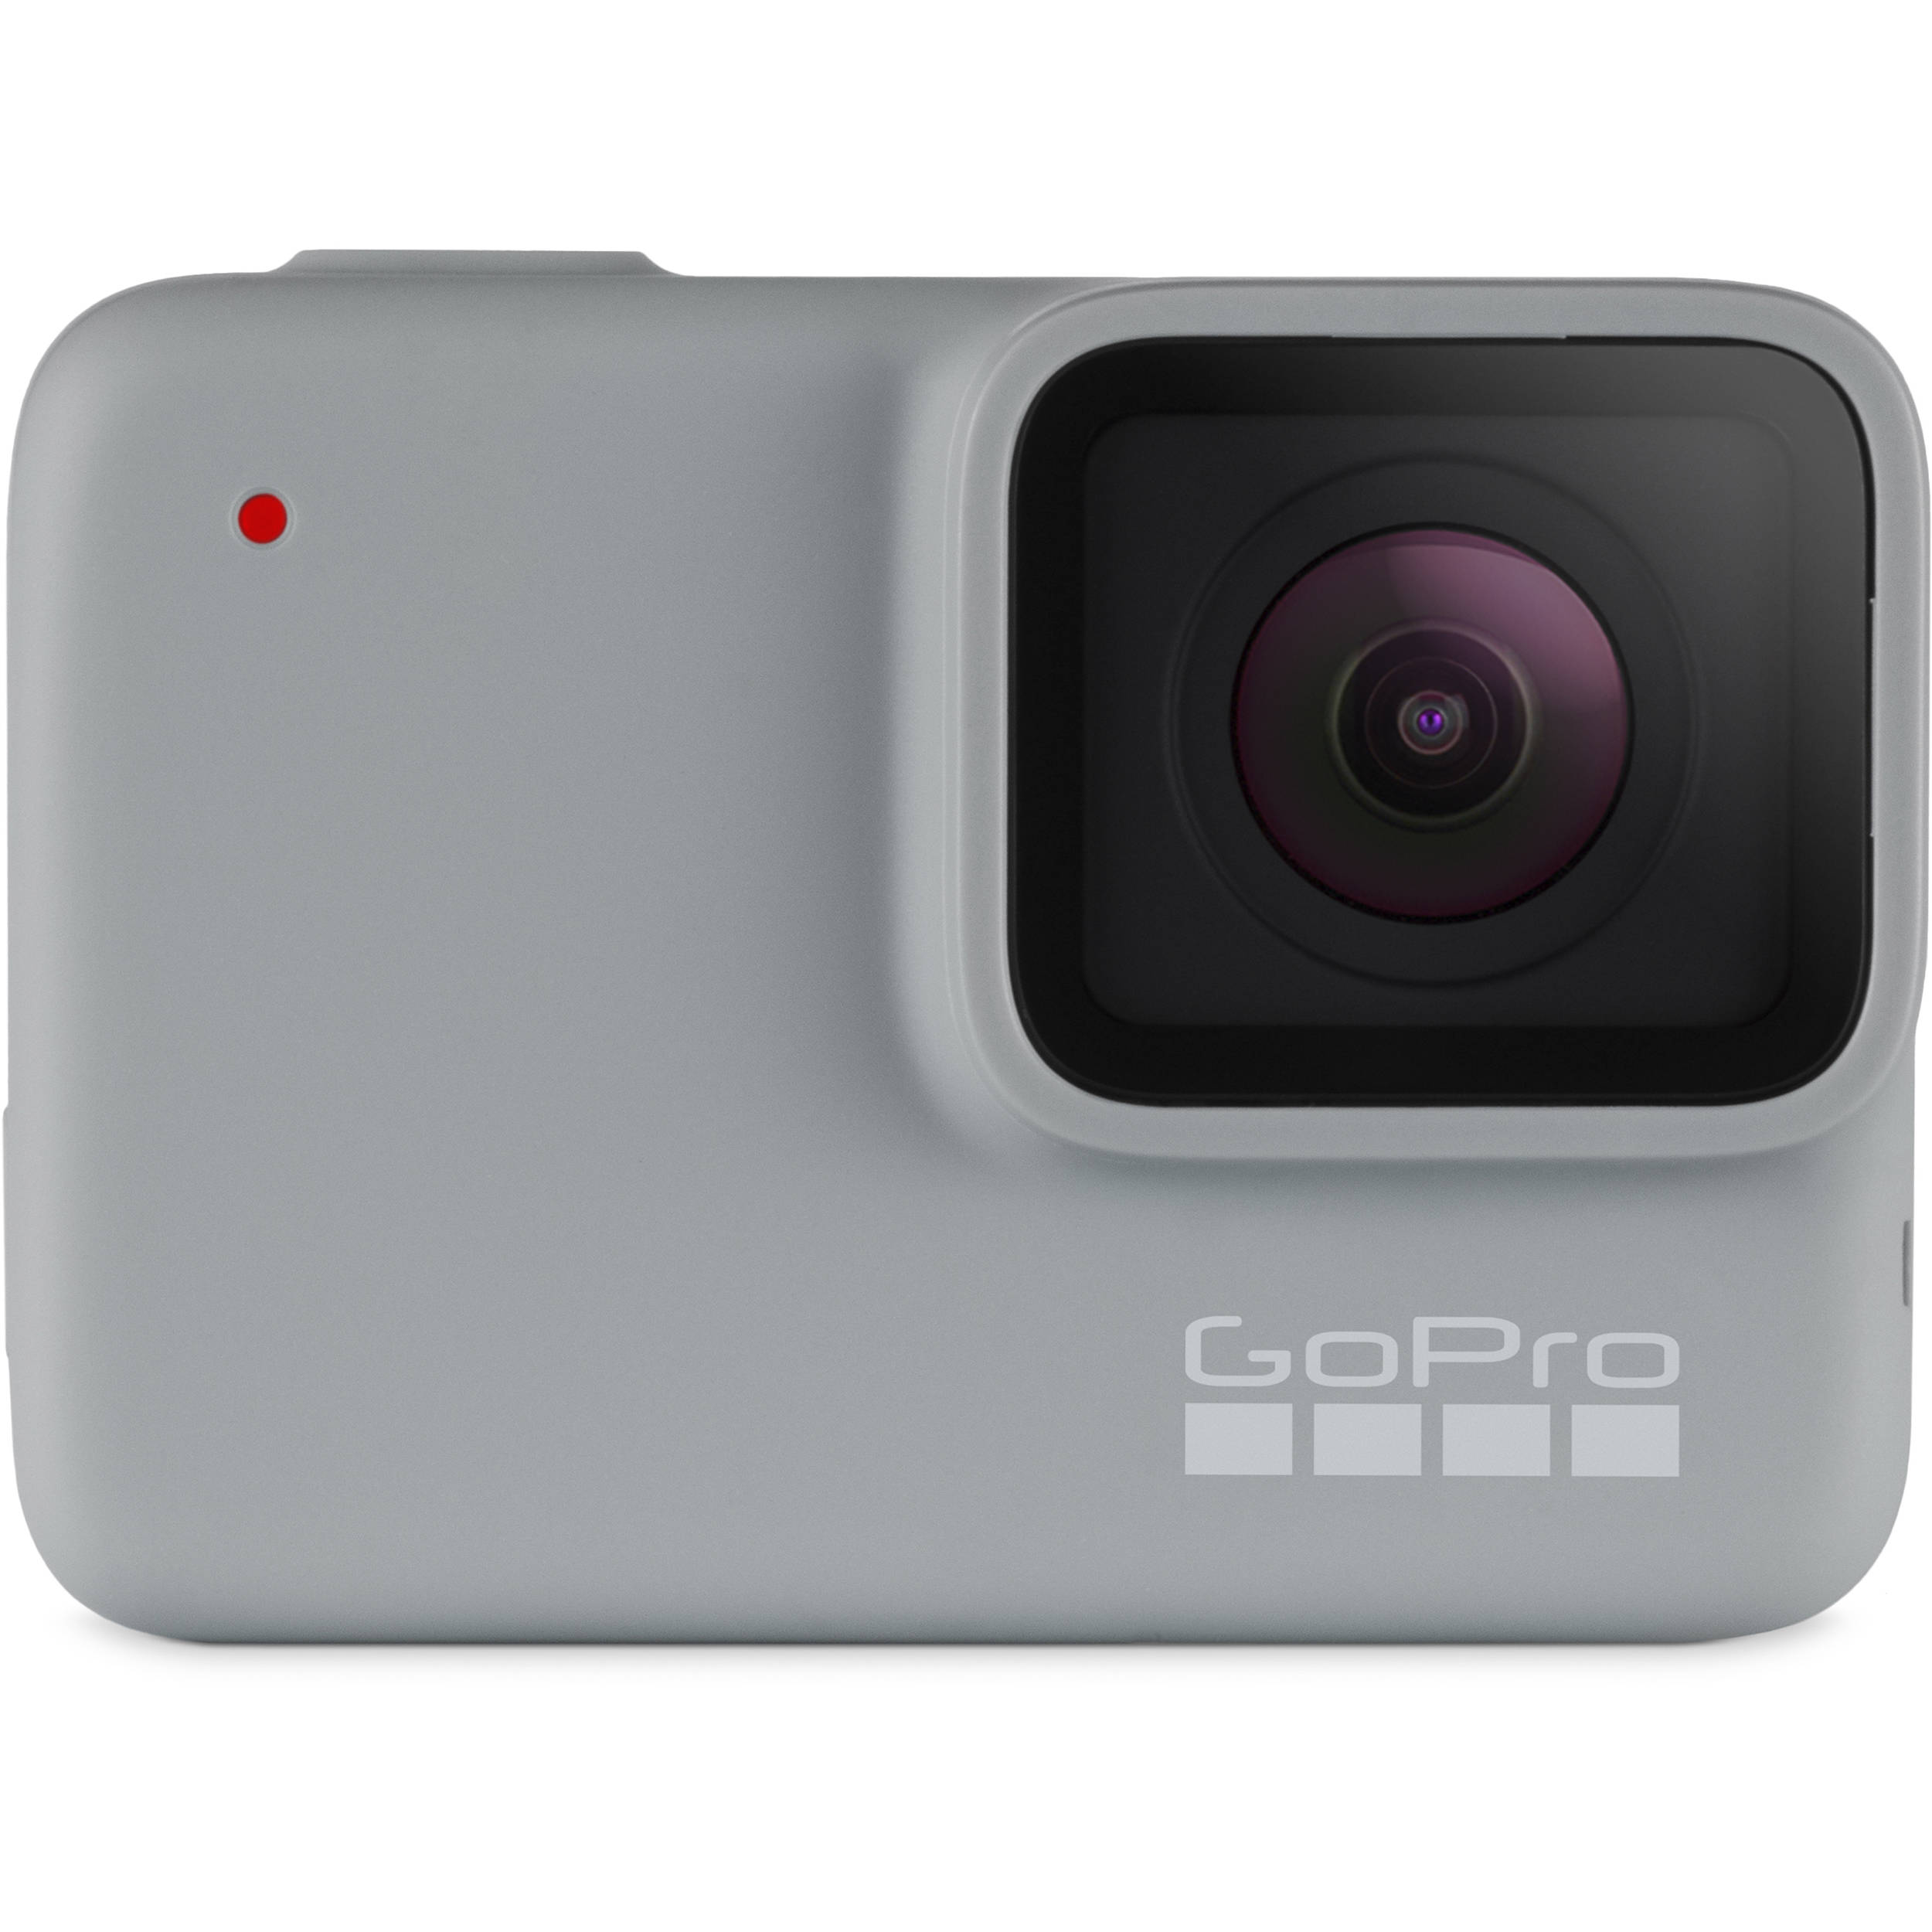 Купить камеру gopro hero. GOPRO Hero 7 White. Камера GOPRO Hero 7. Камера GOPRO Hero (CHDHB-501-RW). Камера гопро 1080p.